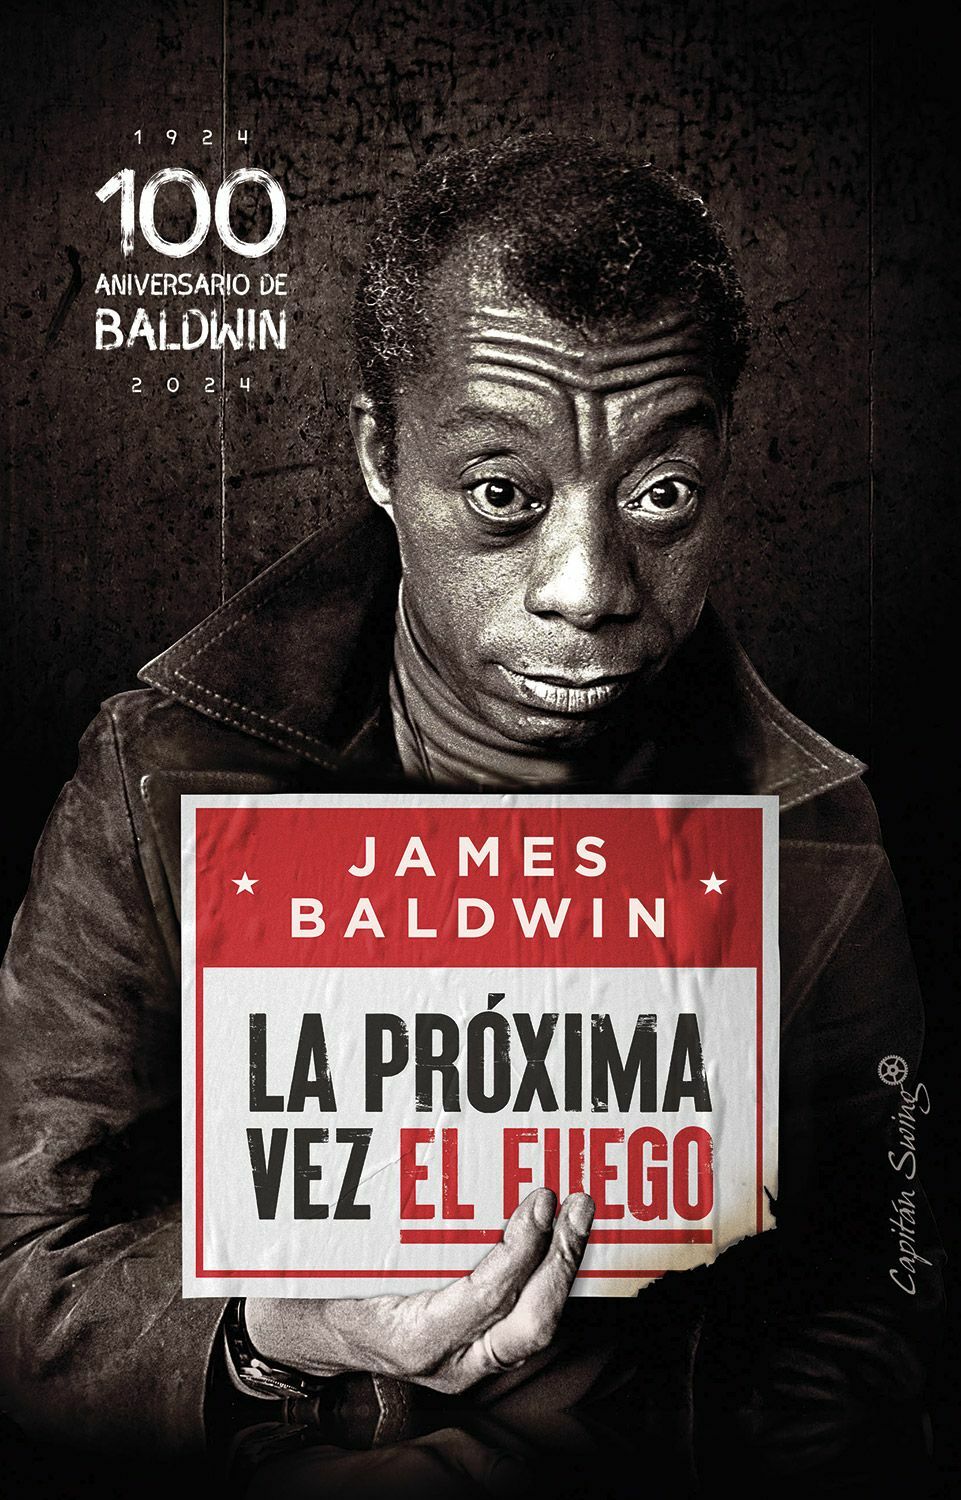 James-Baldwin-La-proxima-vez-el-fuego